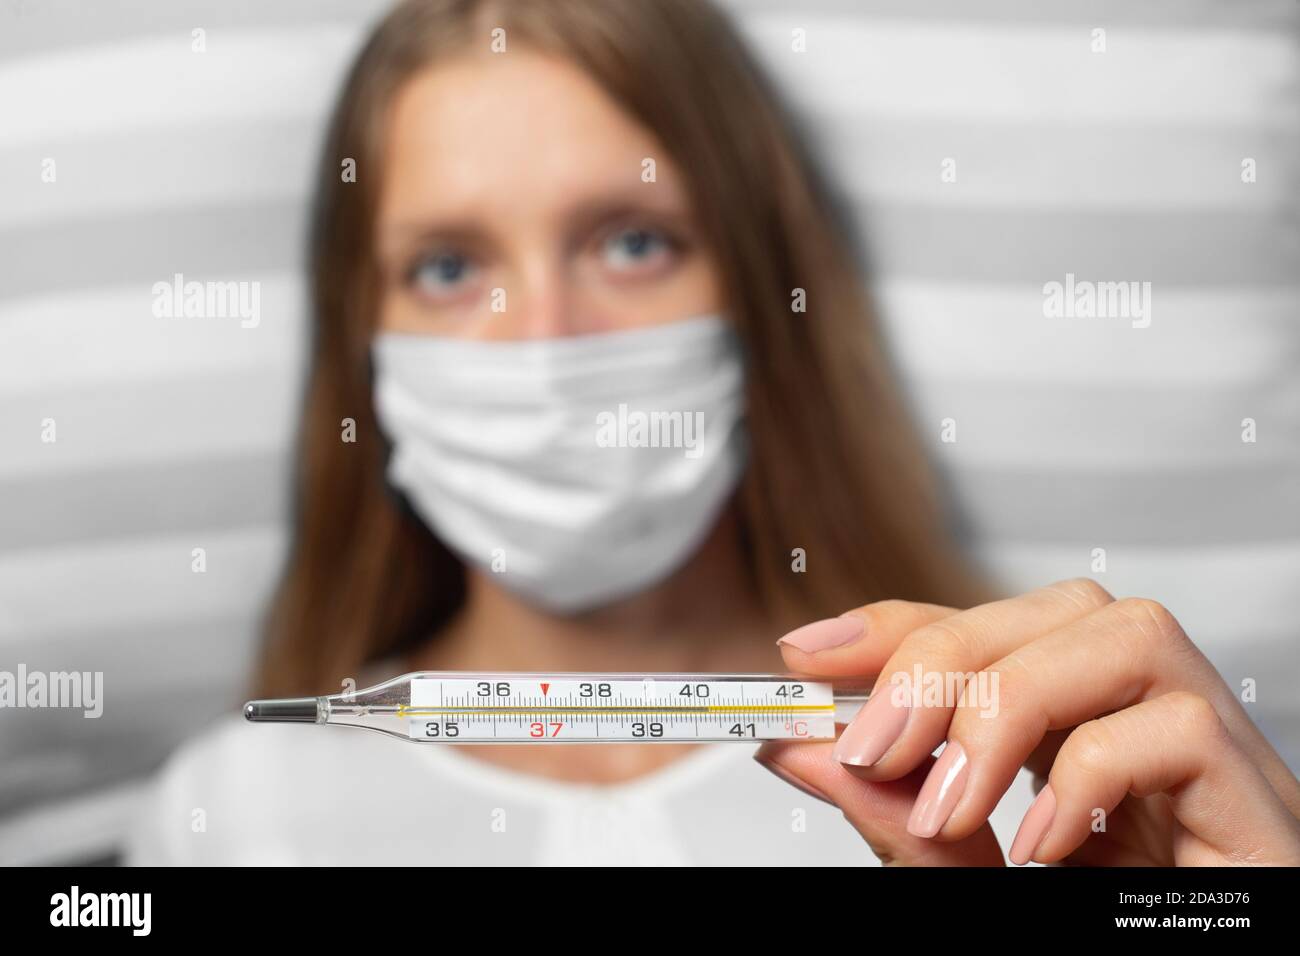 La jeune femme porte un masque médical et un thermomètre. Isolé sur fond blanc. Concept des épidémies de pneumonie, des épidémies de coronavirus a Banque D'Images